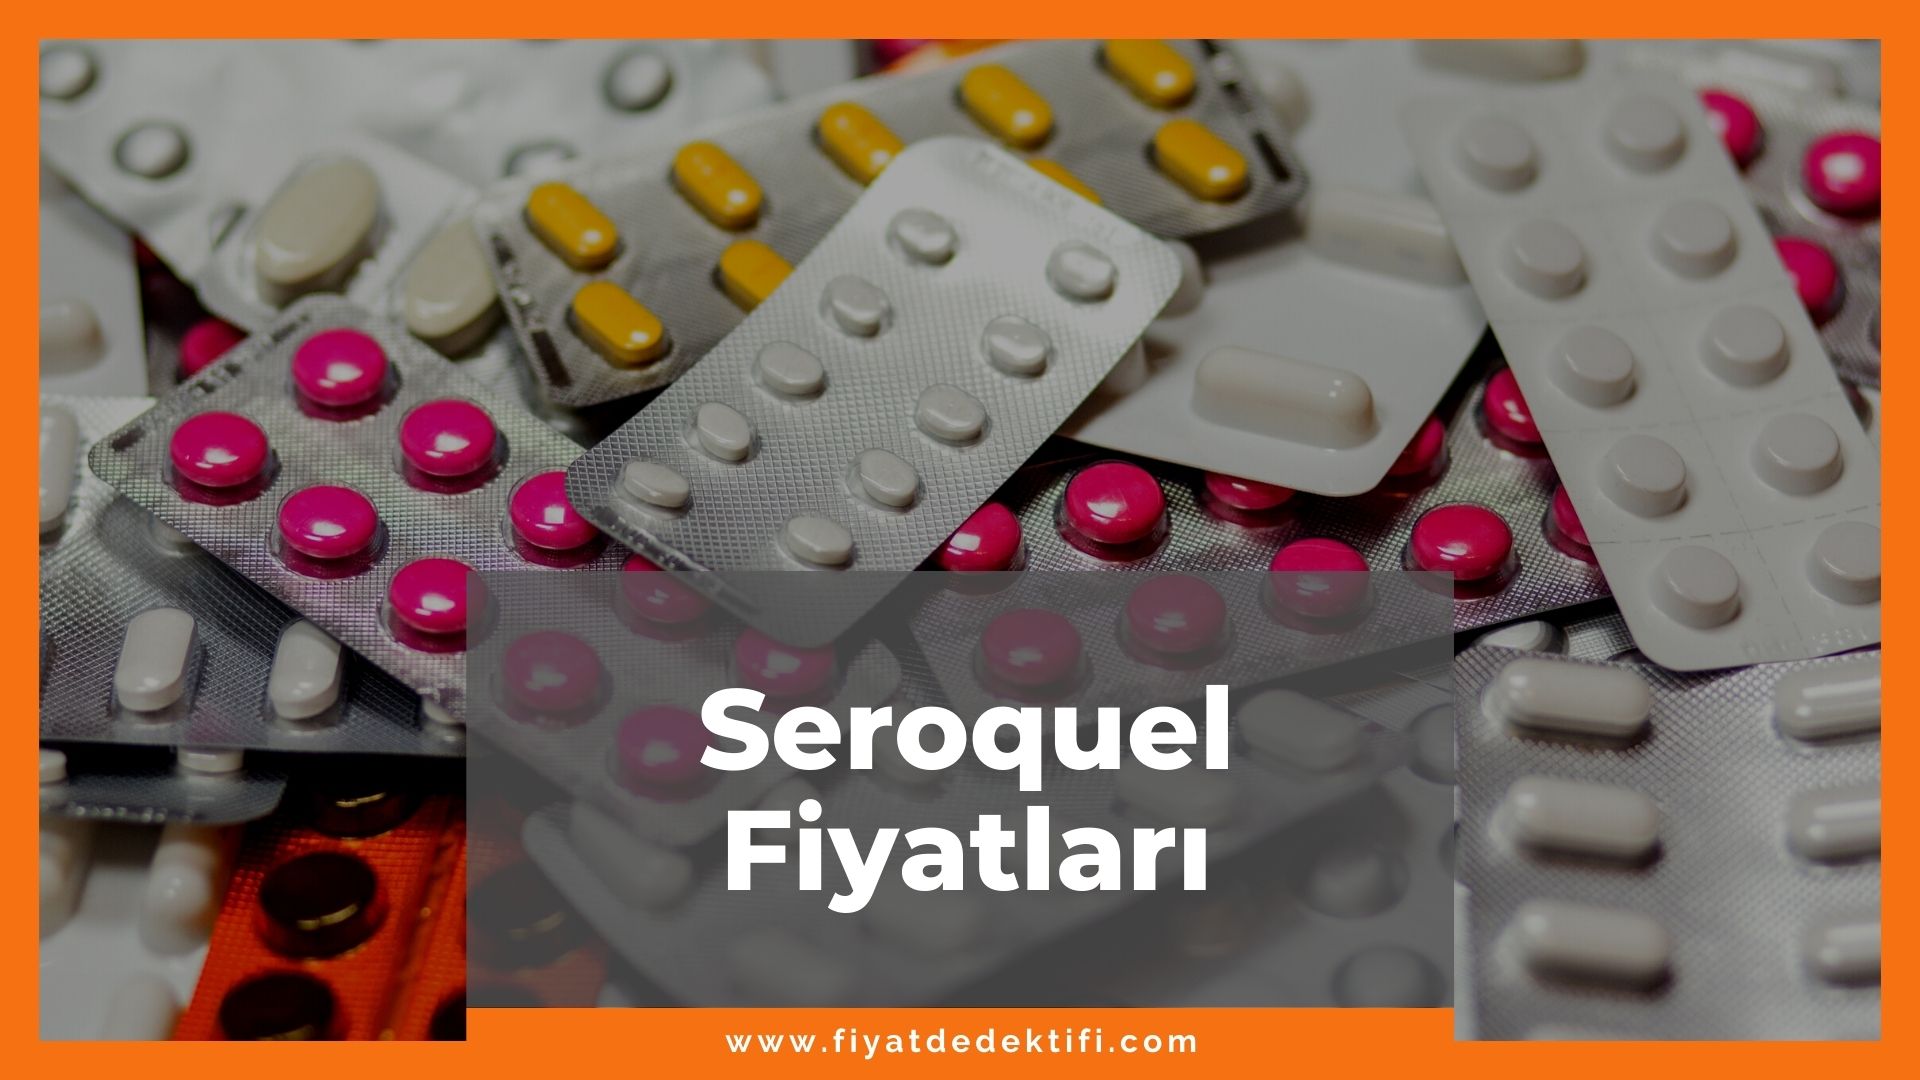 Seroquel Fiyat 2021, Seroquel 25 mg, 100 mg, 200 mg Fiyatı, seroquel zamlandı mı, seroquel zamlı fiyatı ne kadar kaç tl oldu